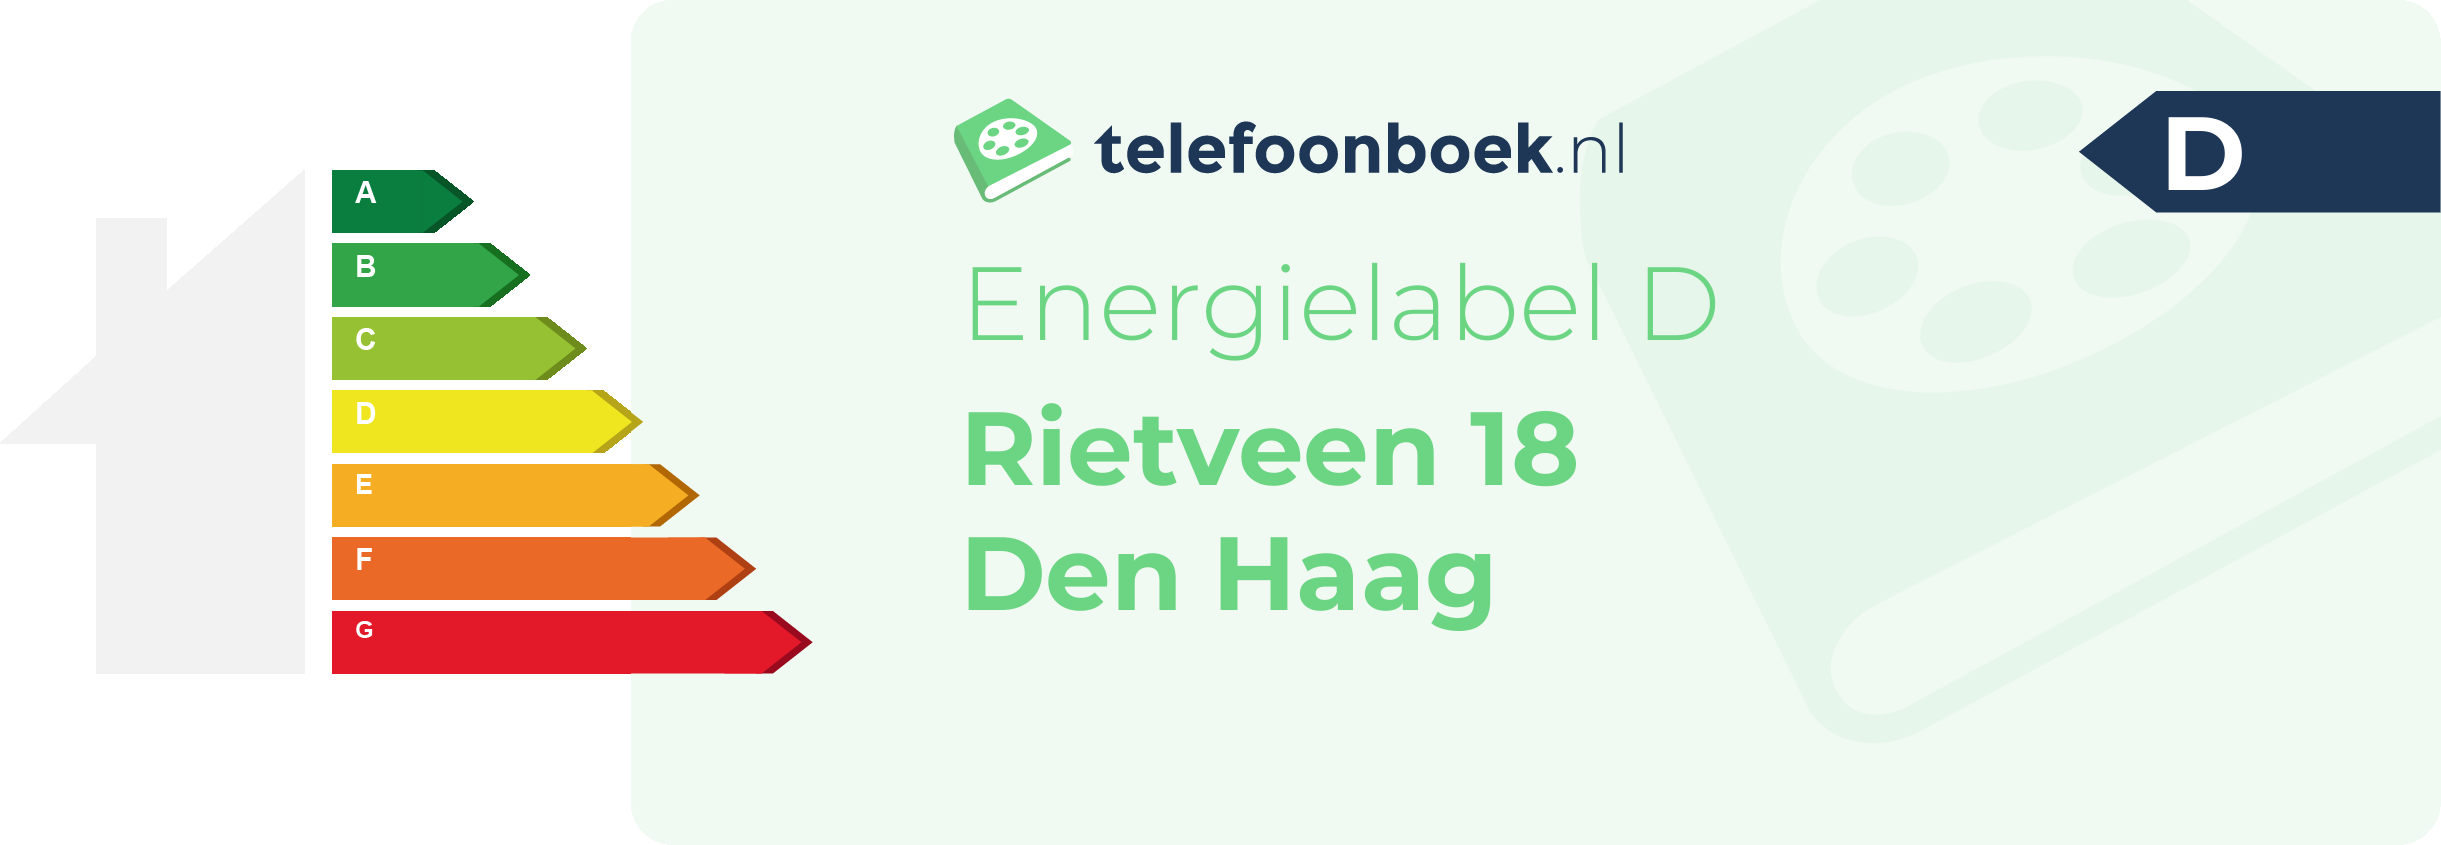 Energielabel Rietveen 18 Den Haag